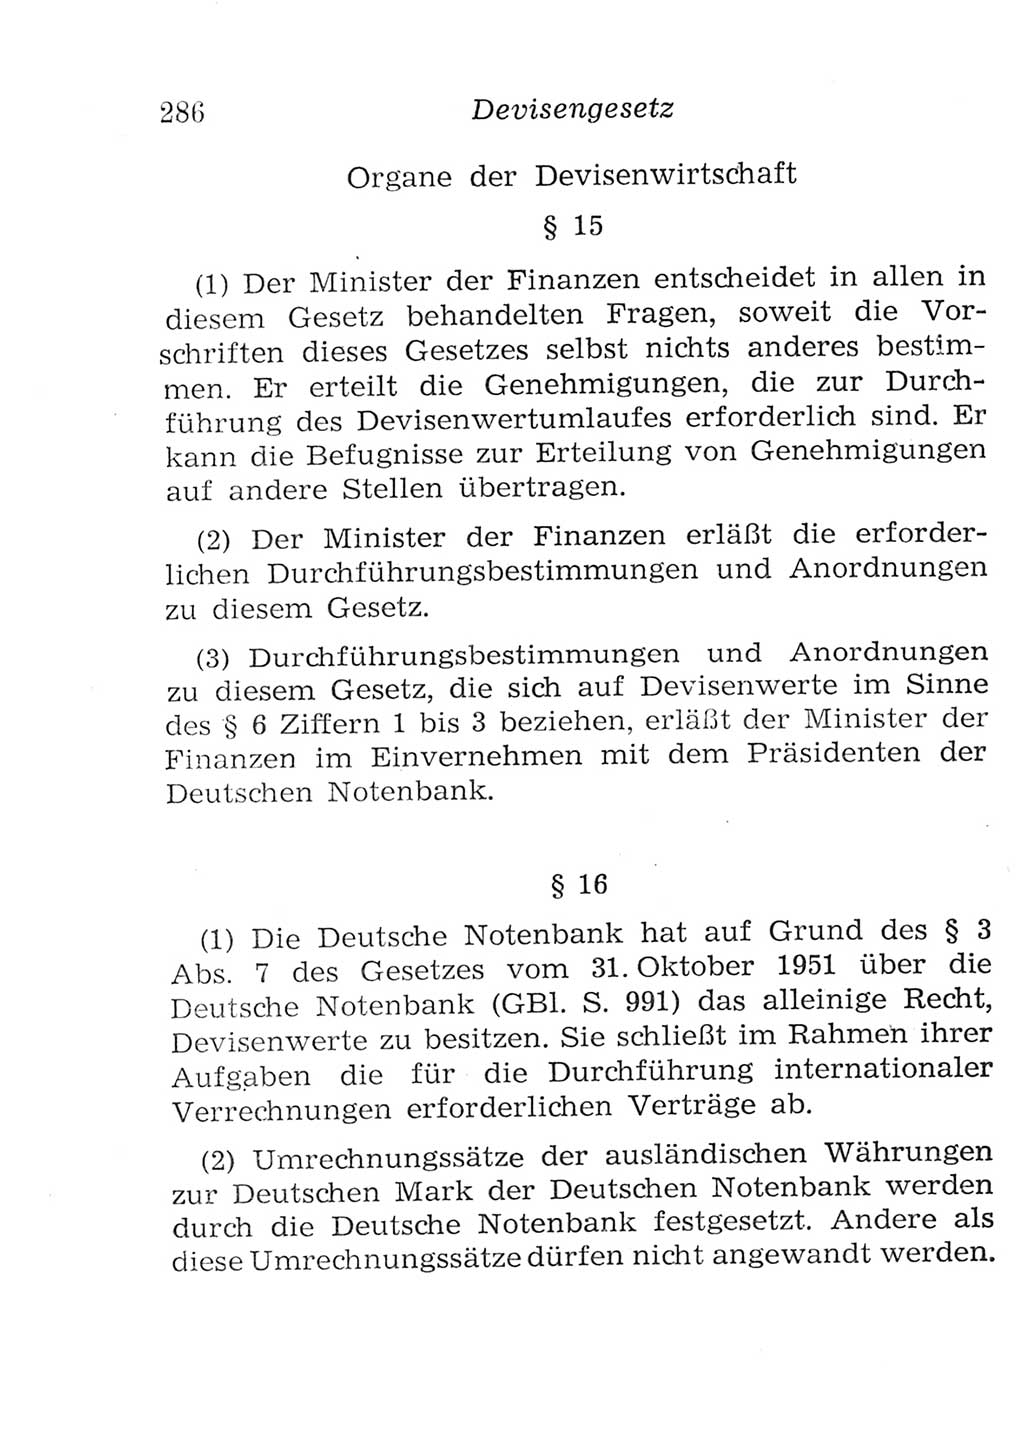 Strafgesetzbuch (StGB) und andere Strafgesetze [Deutsche Demokratische Republik (DDR)] 1957, Seite 286 (StGB Strafges. DDR 1957, S. 286)